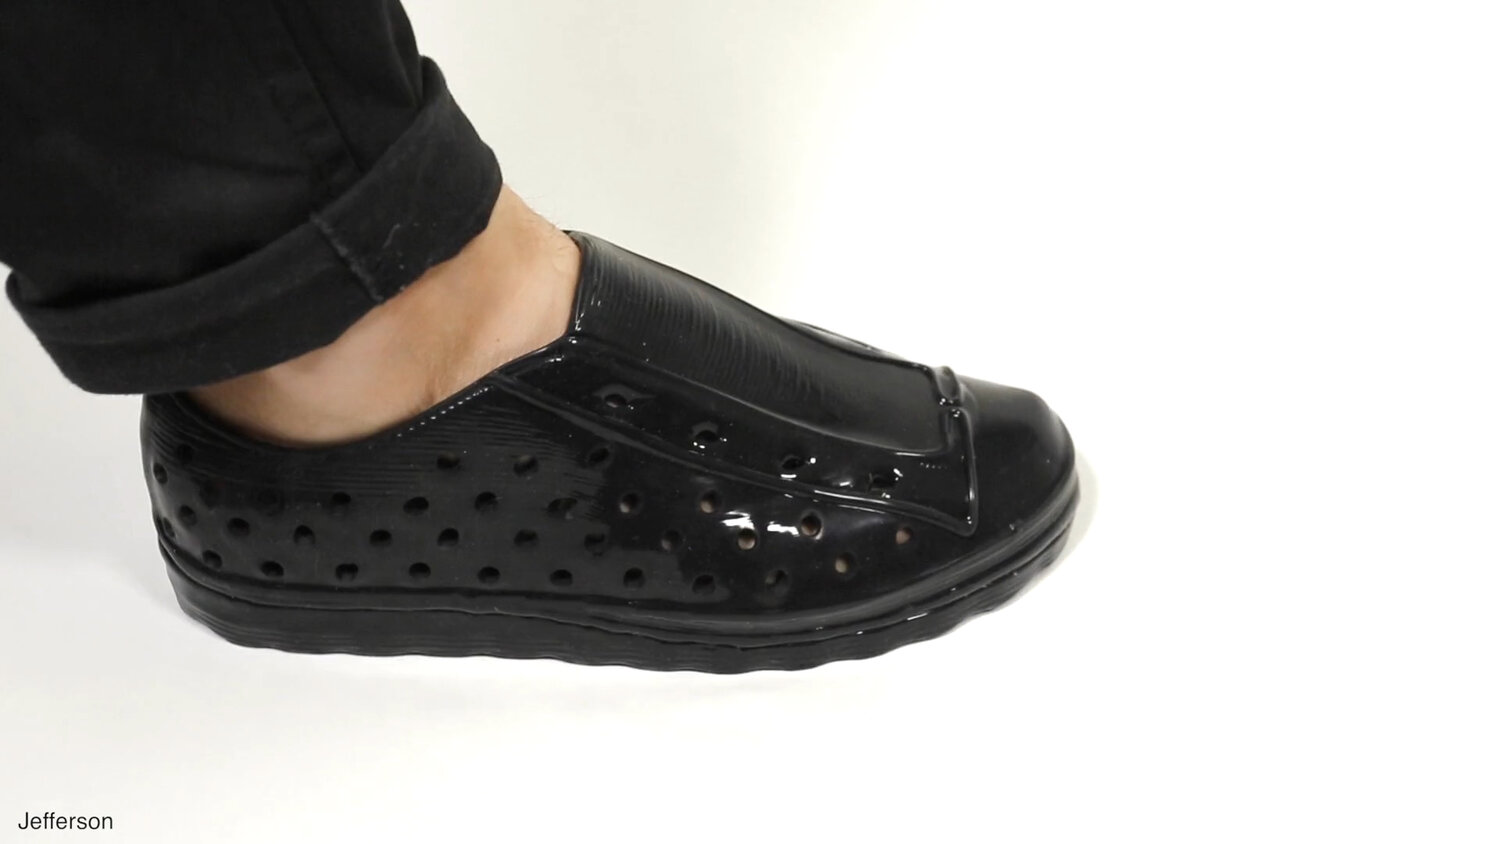 Des chaussures entièrement imprimées 3D et fabriquées en Fra